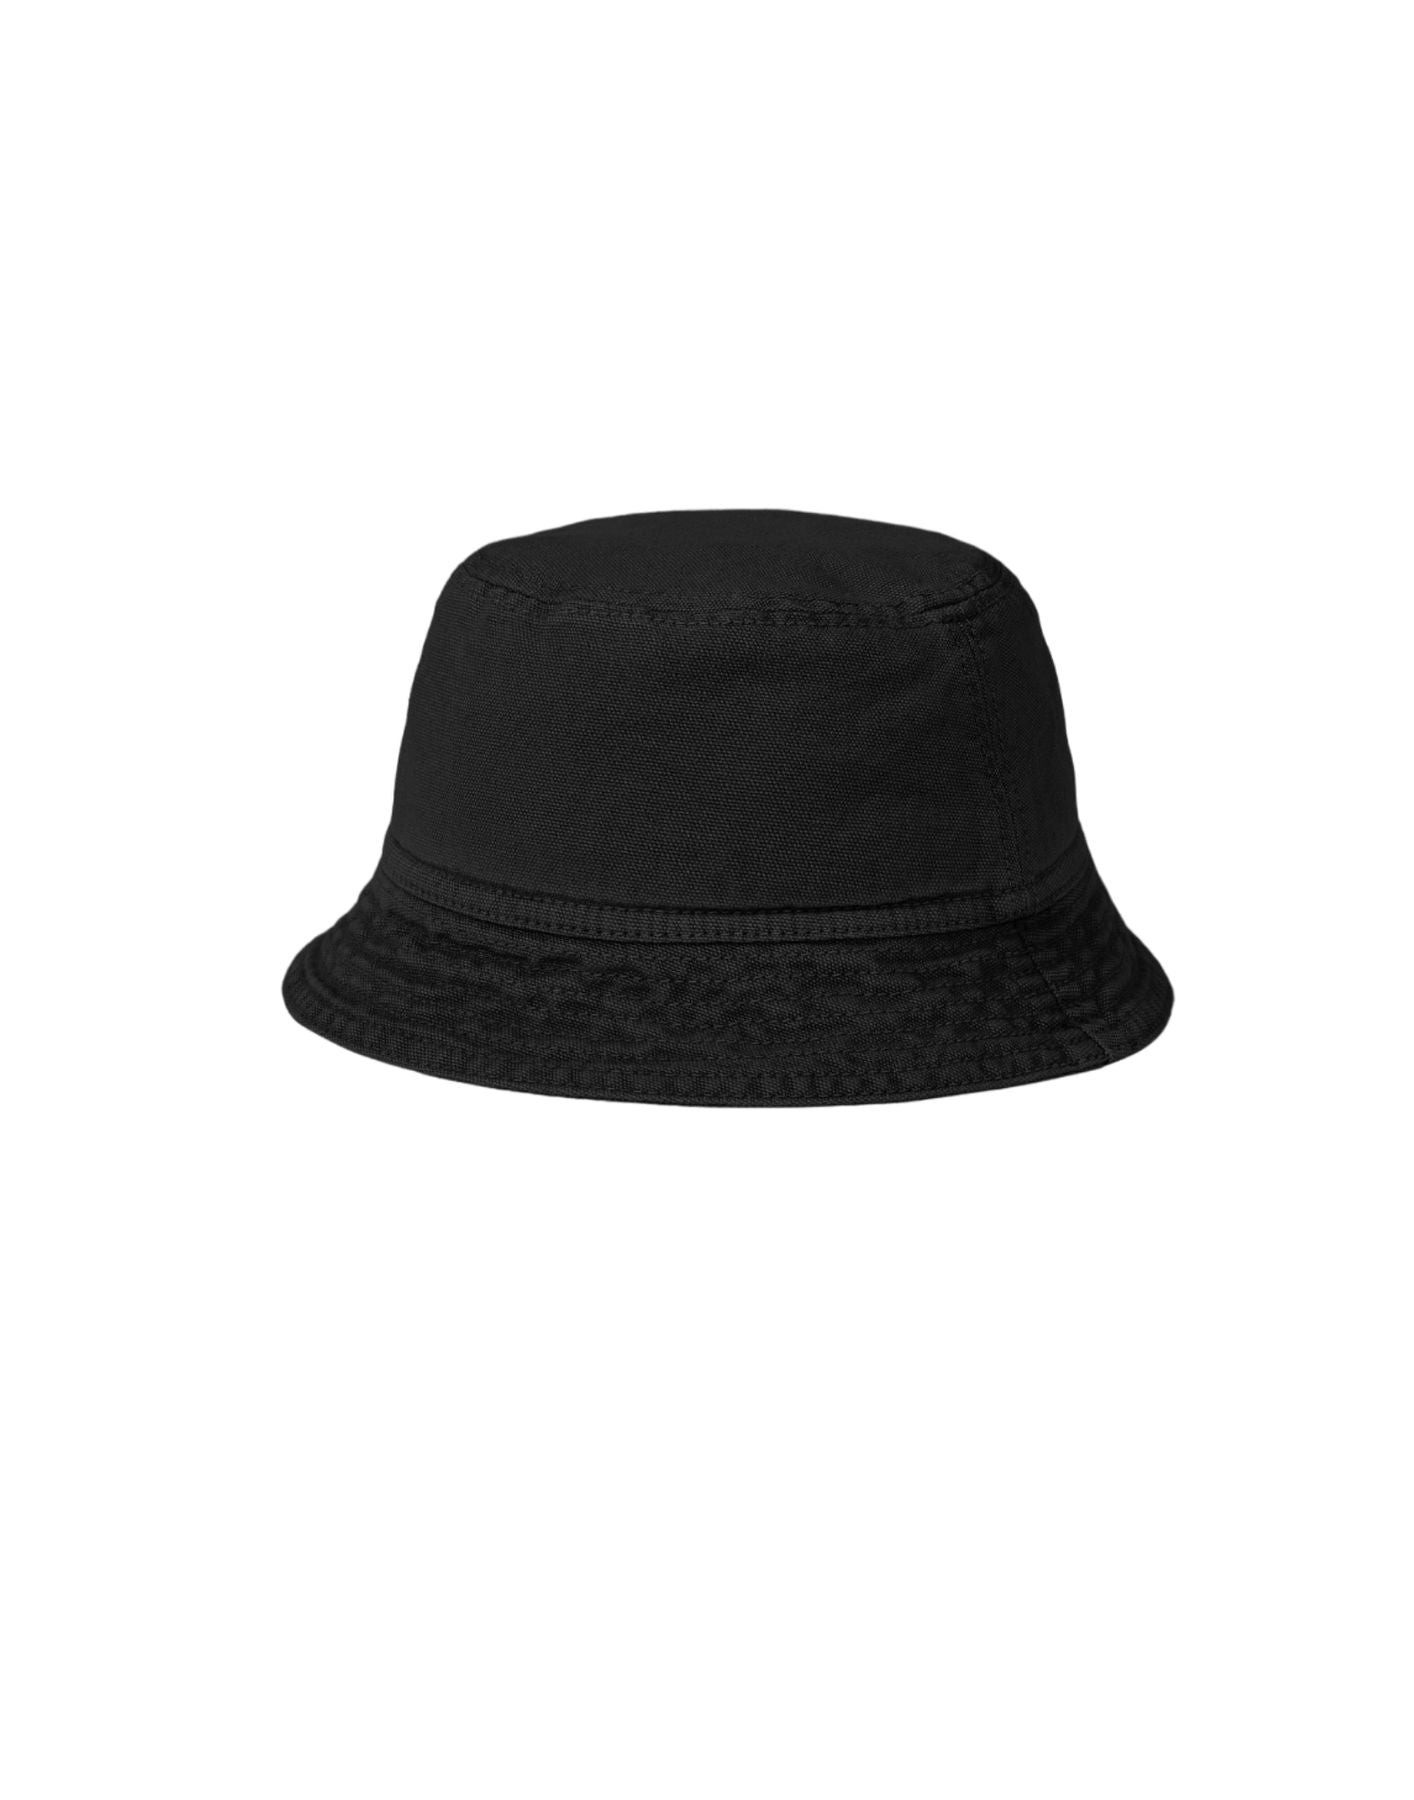 Sombrero para hombres i032938 negro CARHARTT WIP